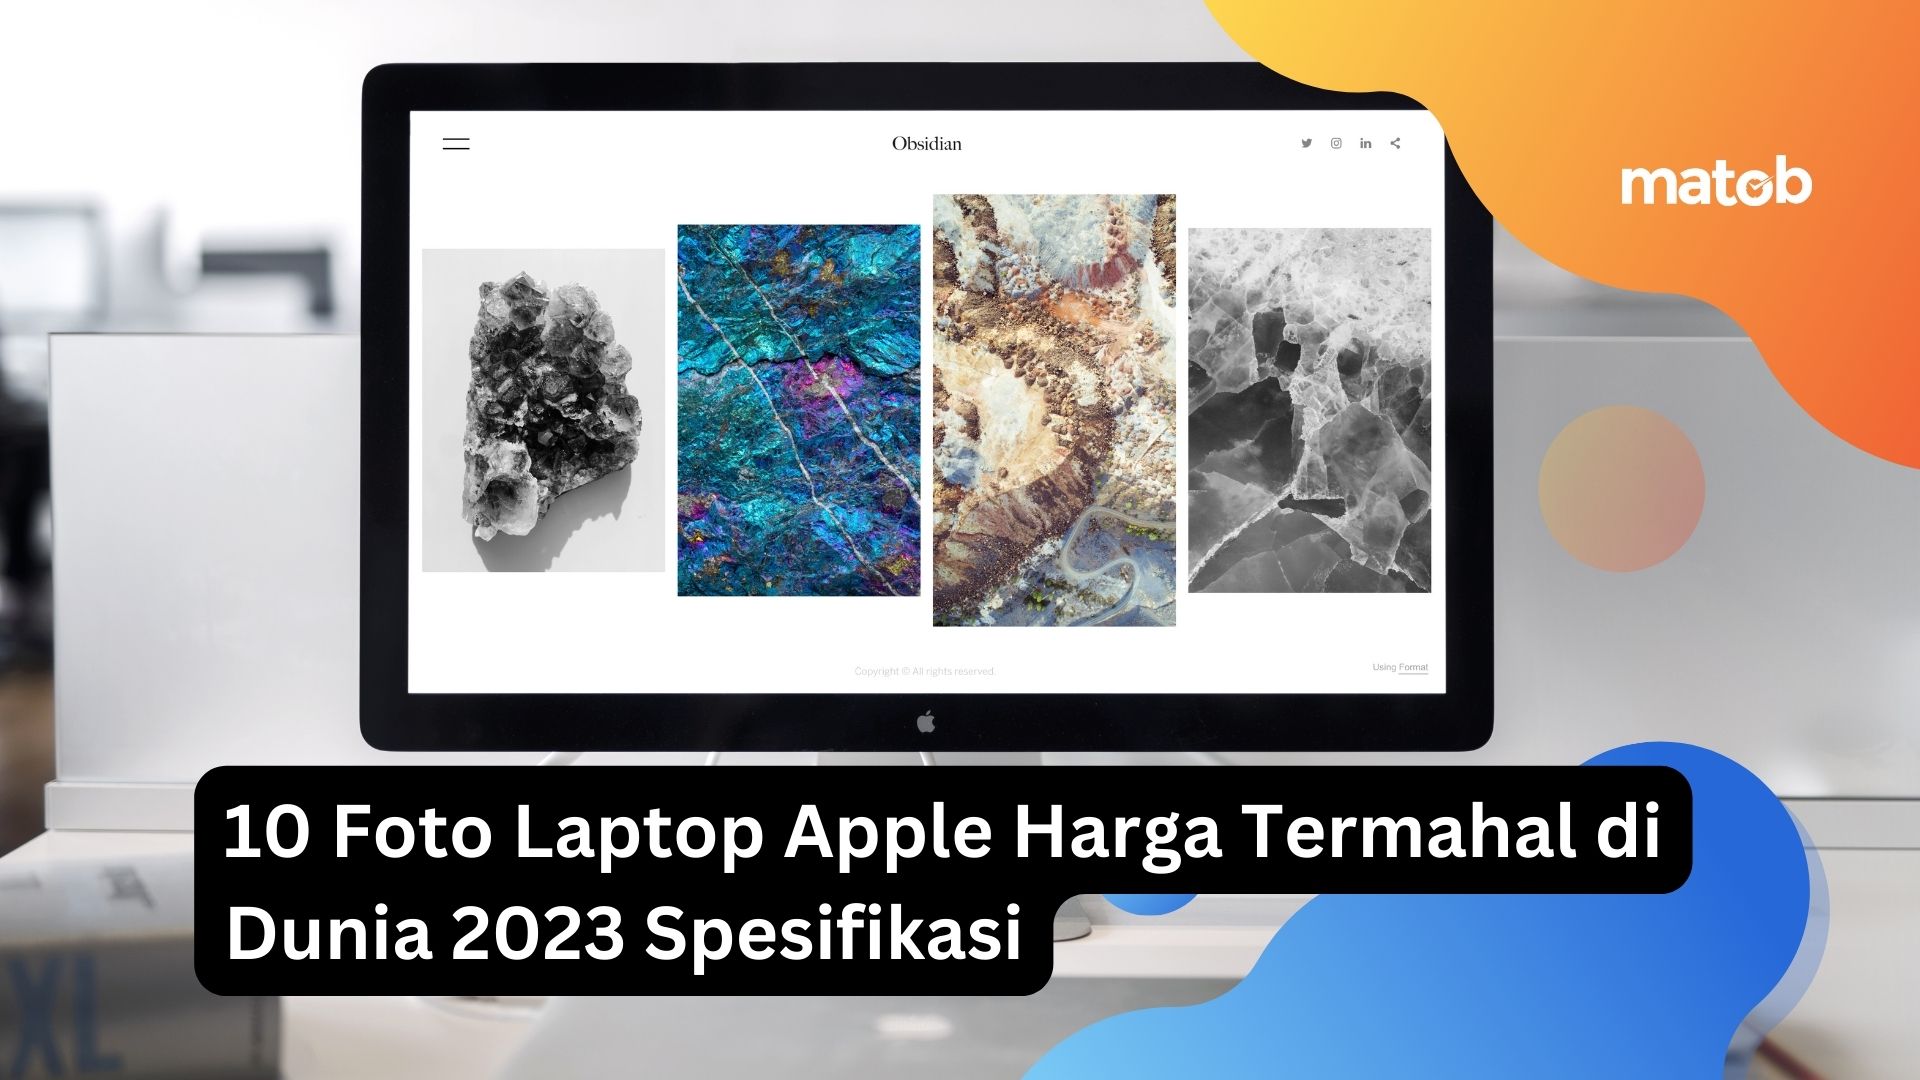 10 Foto Laptop Apple Harga Termahal di Dunia 2023 Spesifikasi